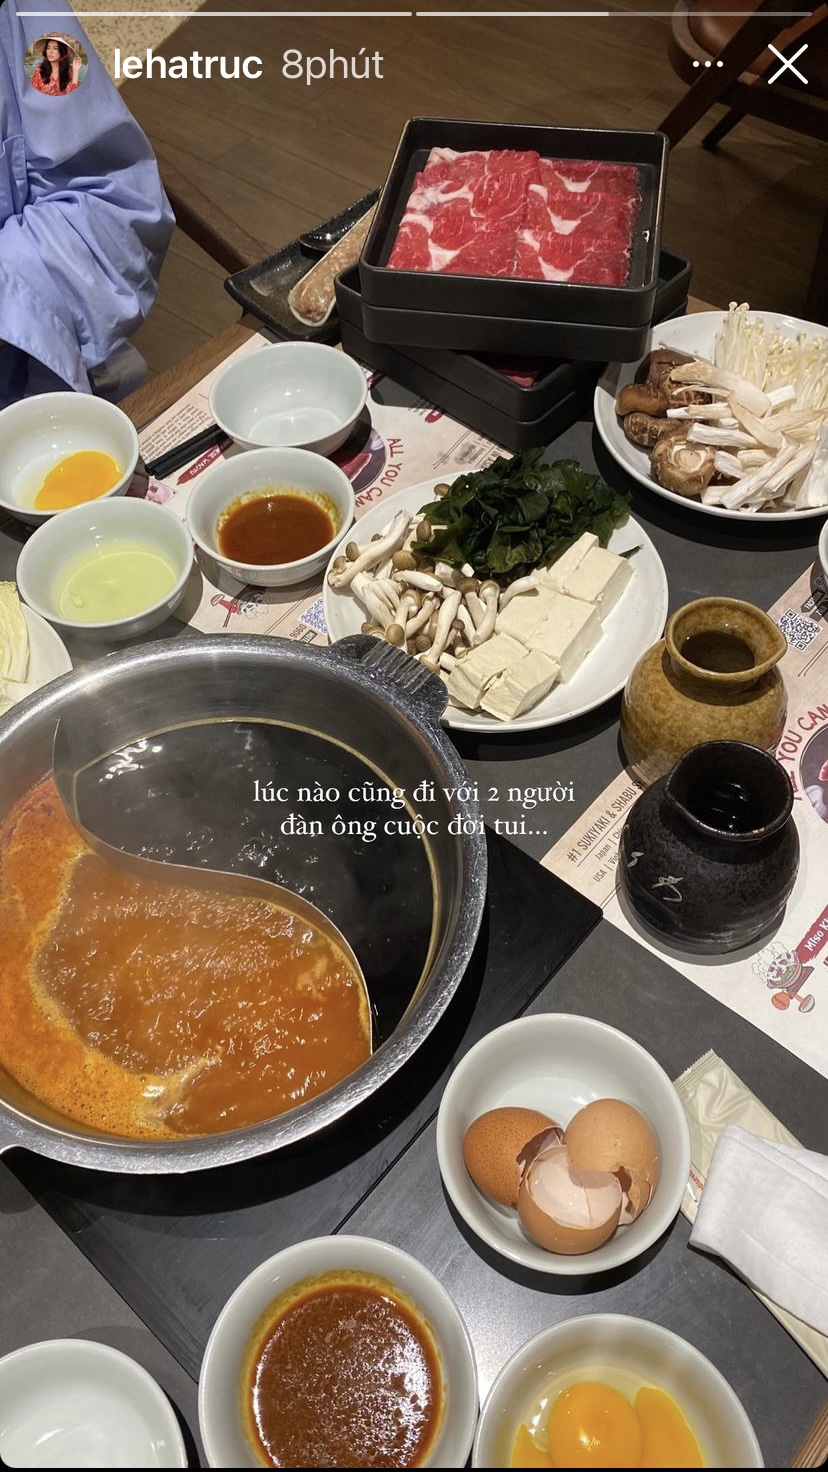 Travel Blogger Lê Hà Trúc và bữa lẩu nghi ngút khói ngày chủ nhật. Nhìn topping ăn kèm như thịt bò, nấm, đậu hũ, trứng... trên bàn là đủ thấy được độ 'chất lượng' của món ăn rồi.